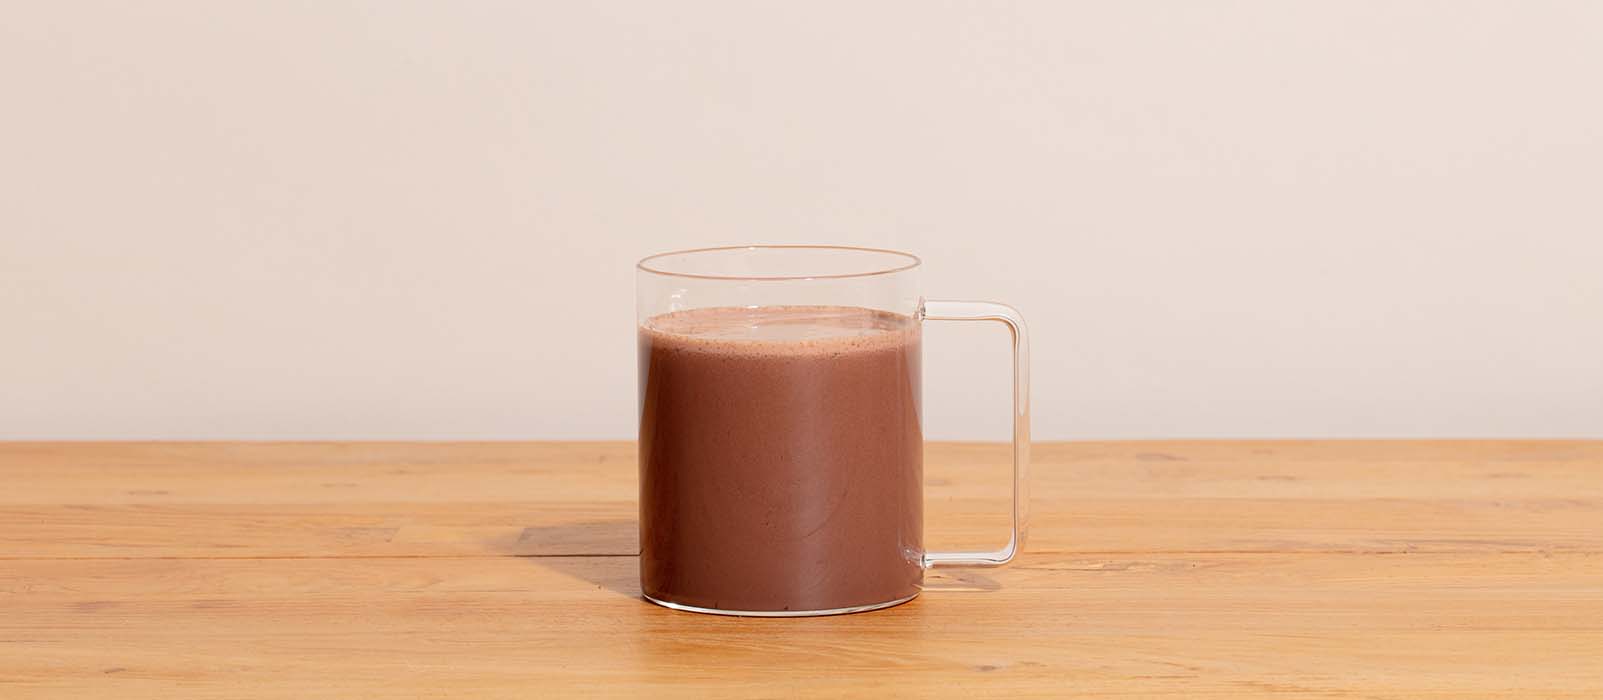 cacao en poudre pour chocolat chaud